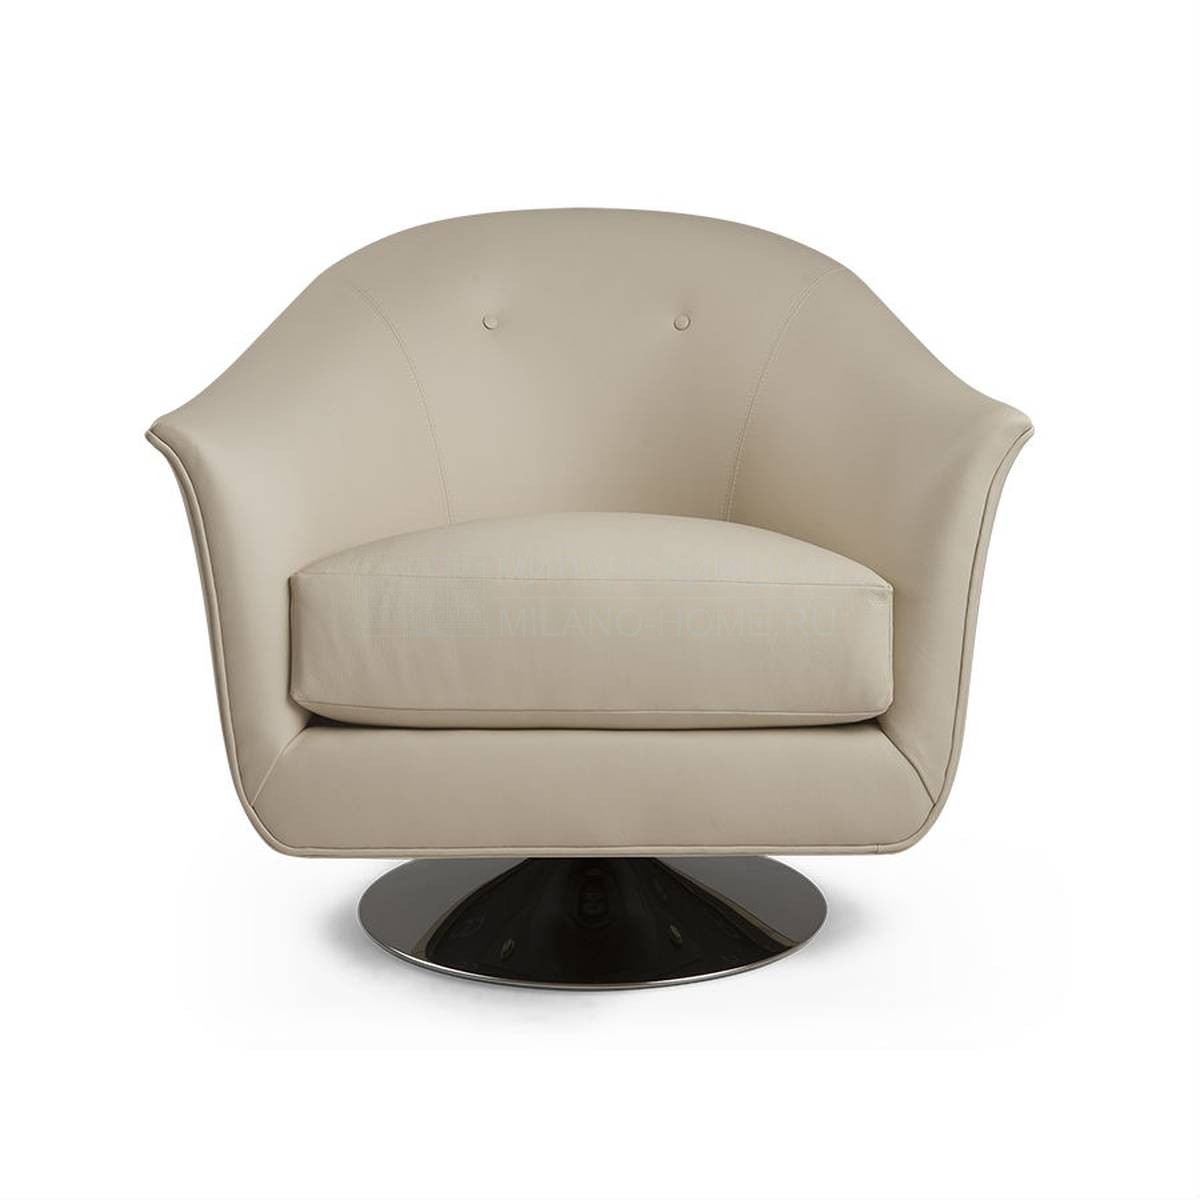 Кожаное кресло Pivotant armchair из США фабрики CHRISTOPHER GUY